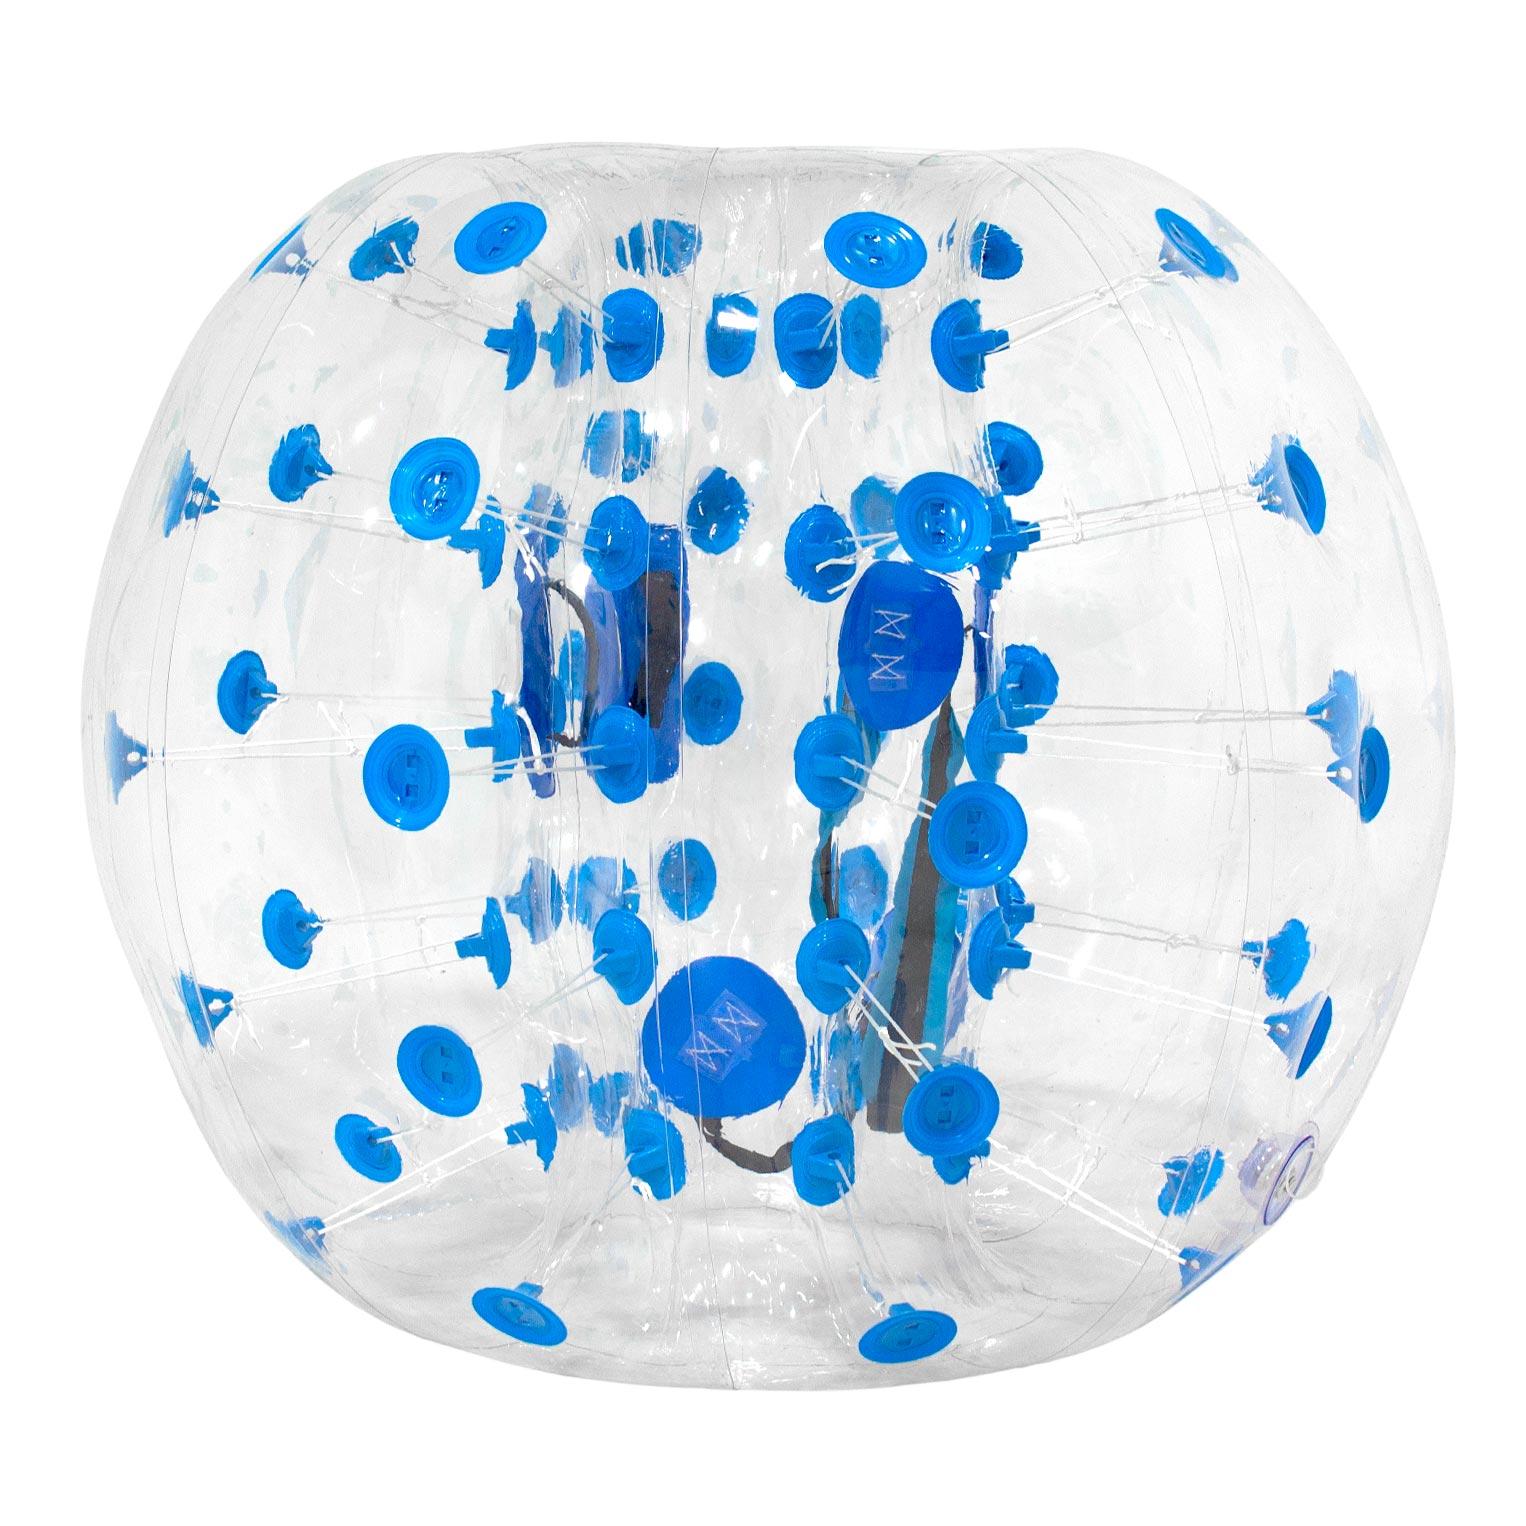 Bumper Ball 1.5m Blue/Clear PVC